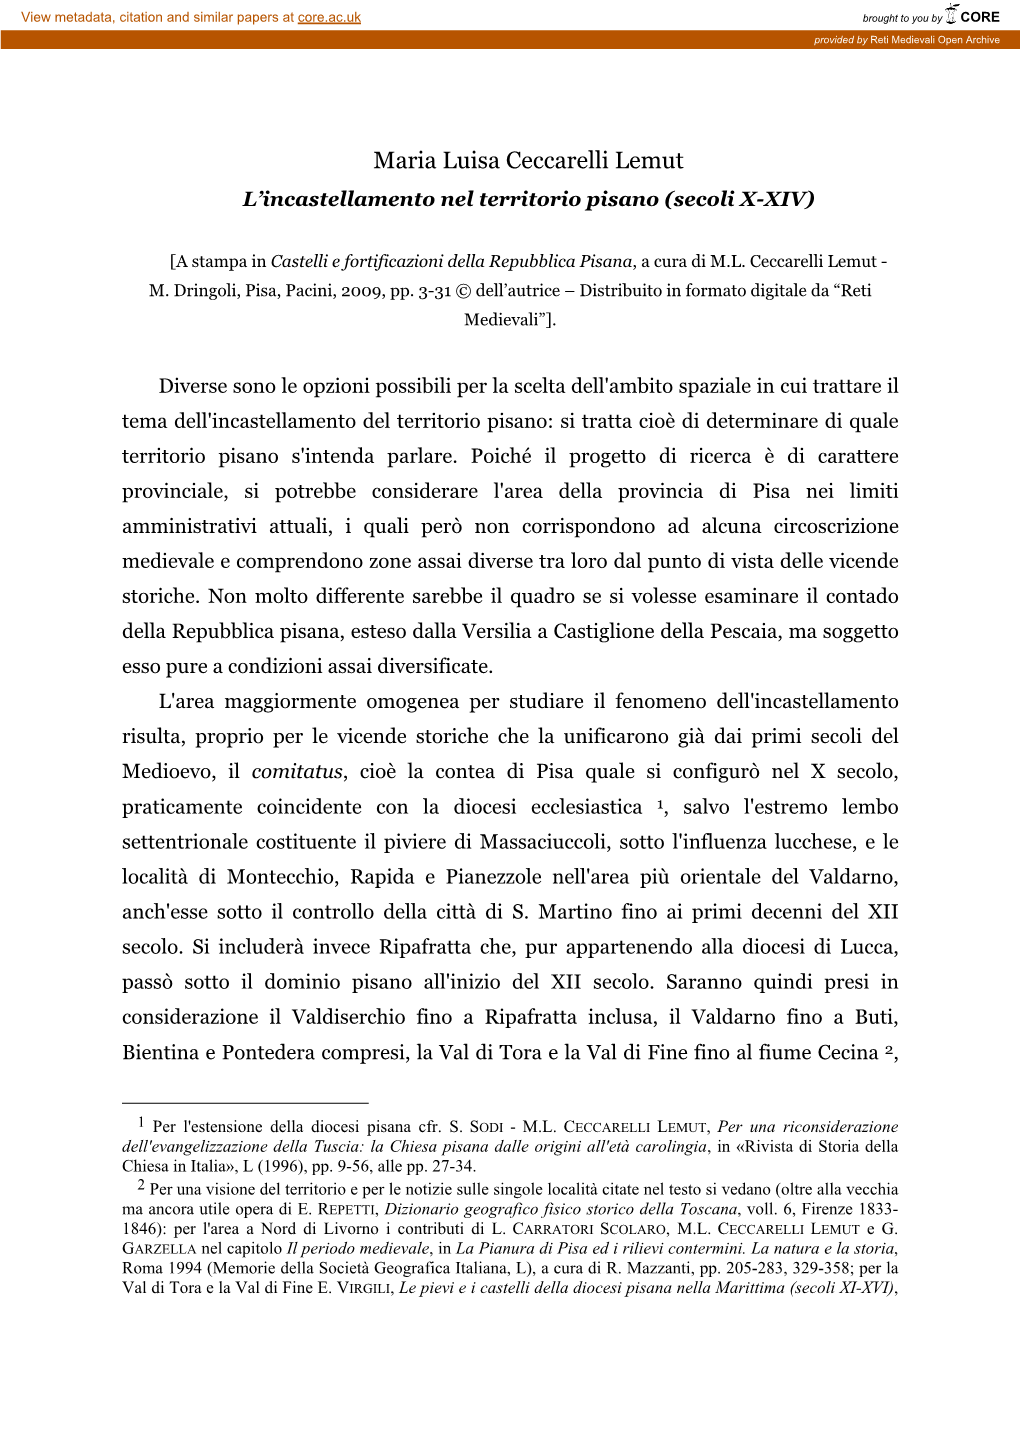 Maria Luisa Ceccarelli Lemut L’Incastellamento Nel Territorio Pisano (Secoli X-XIV)